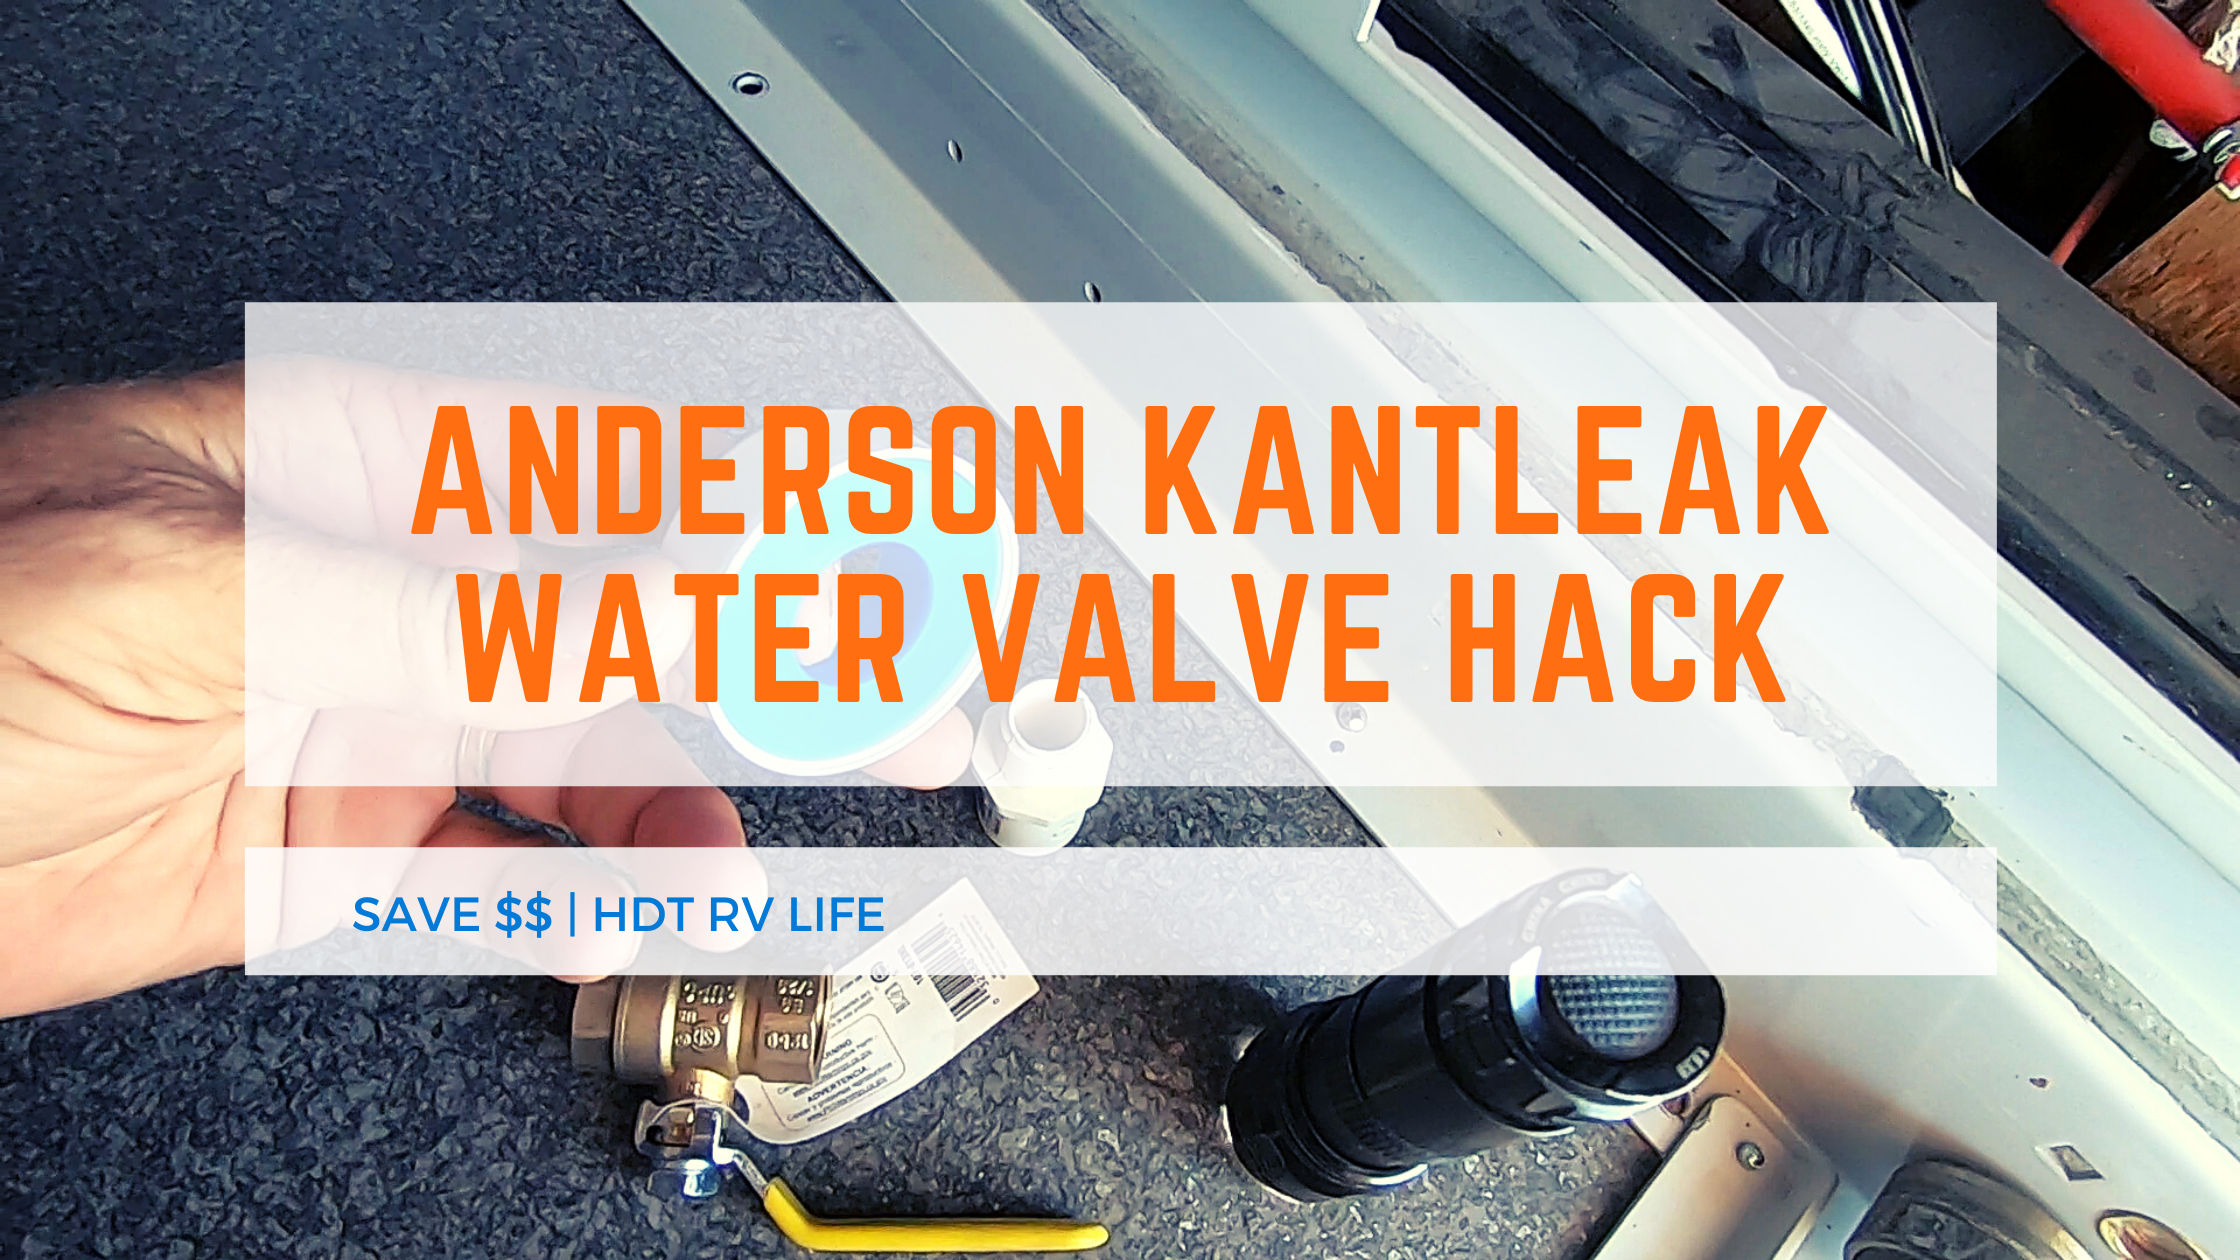 Anderson Kantleak Water Valve Hack